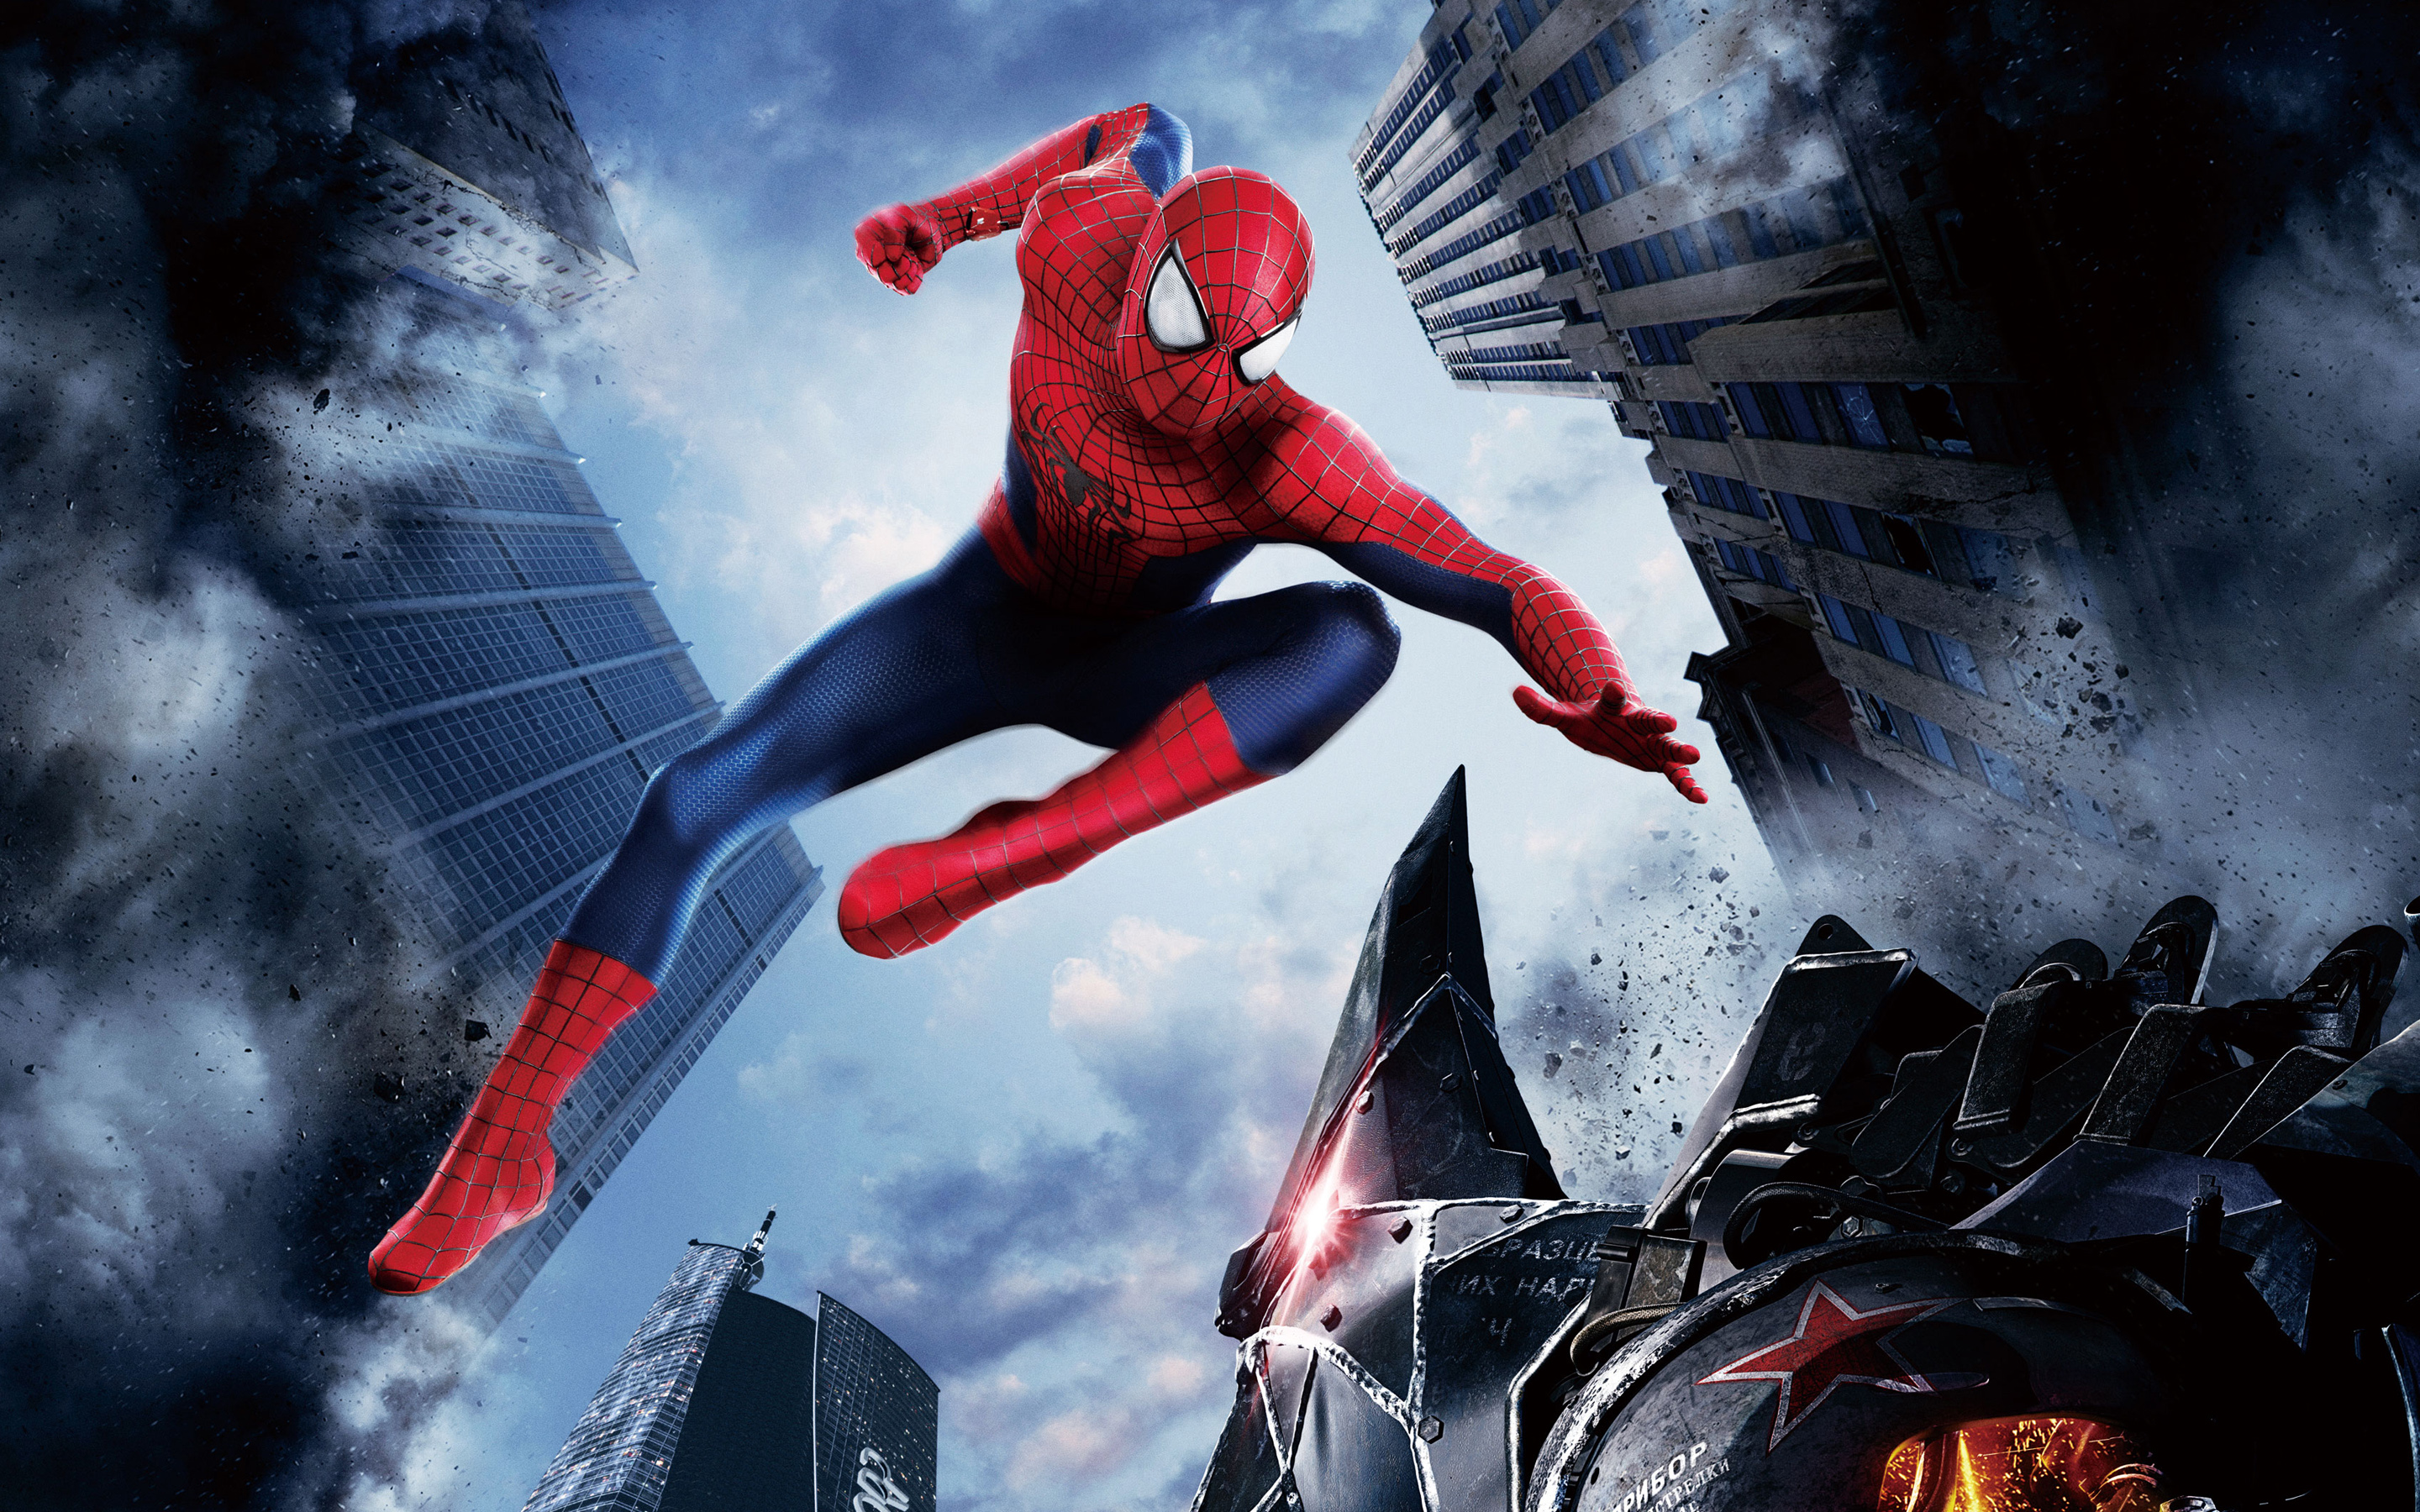 el increíble fondo de pantalla de spider man,personaje de ficción,superhéroe,héroe,cg artwork